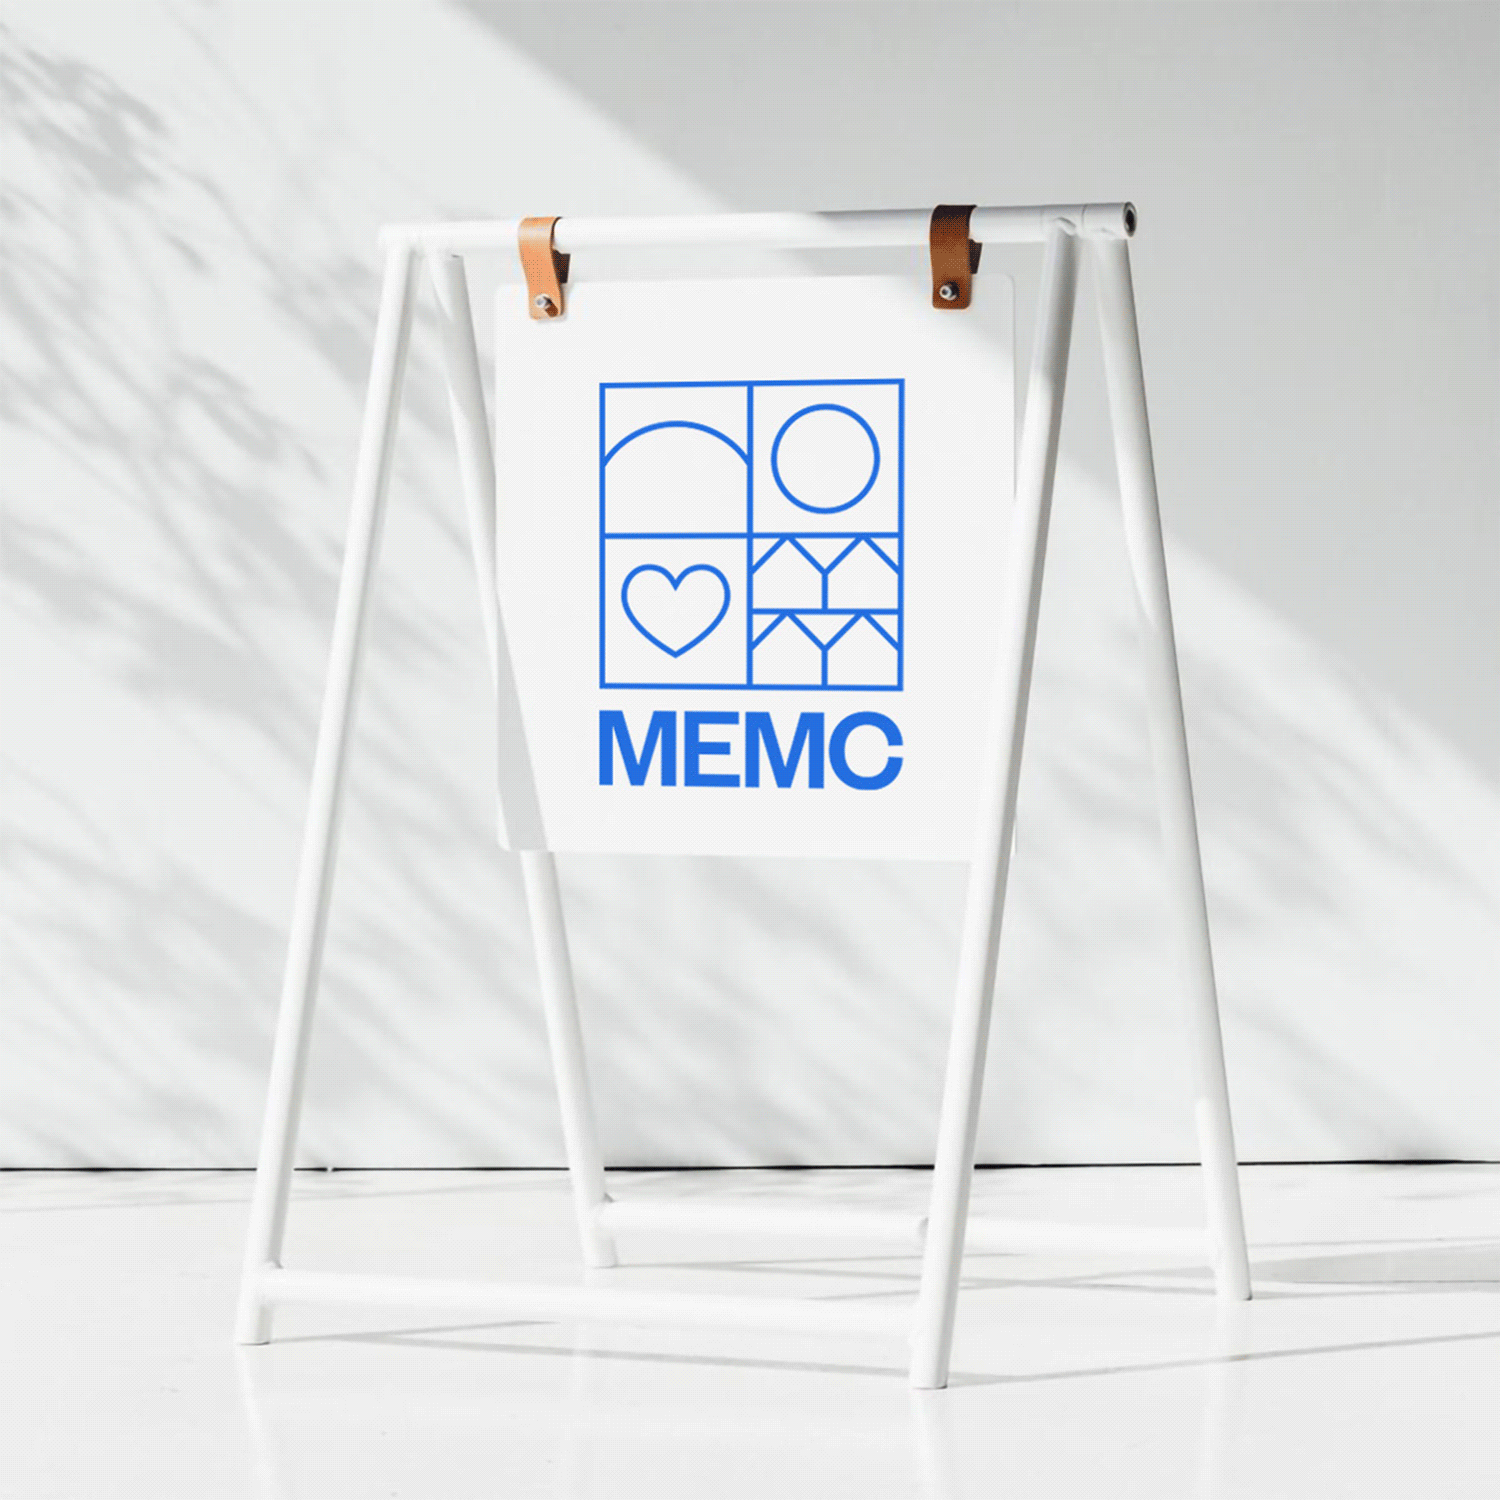 MeMc_StyleGuide_V2-9